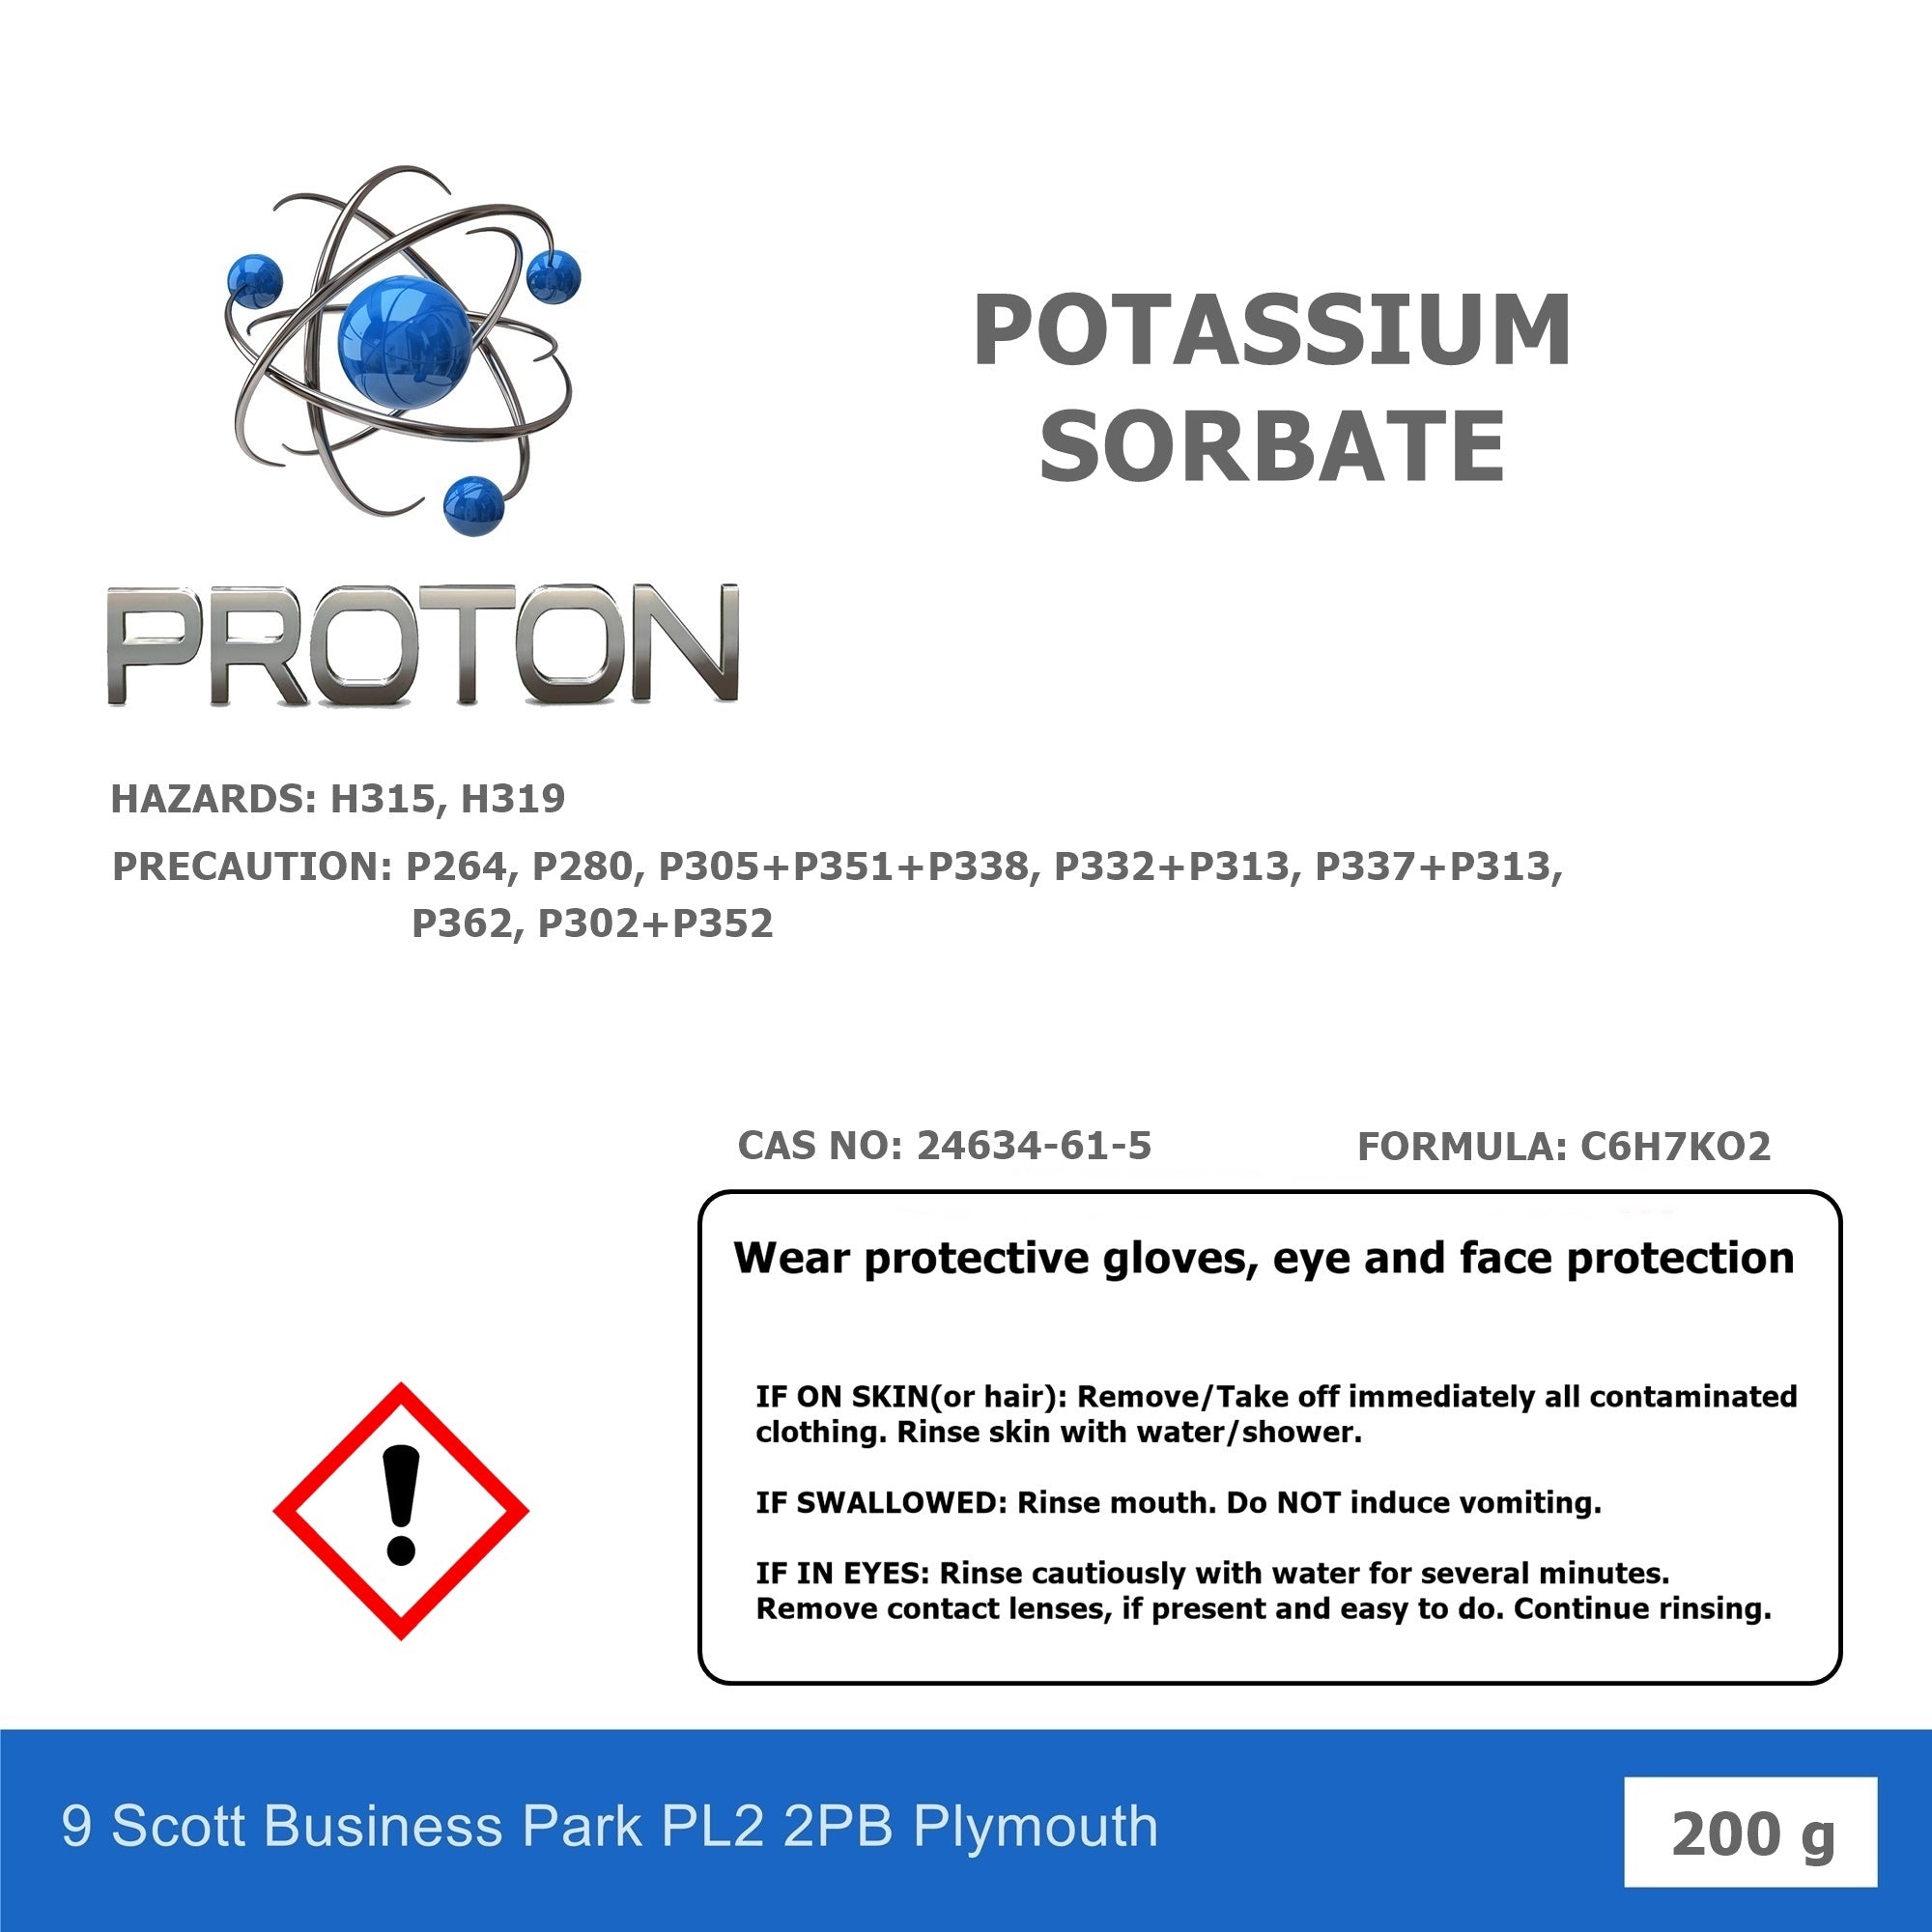 Potassium Sorbate E202